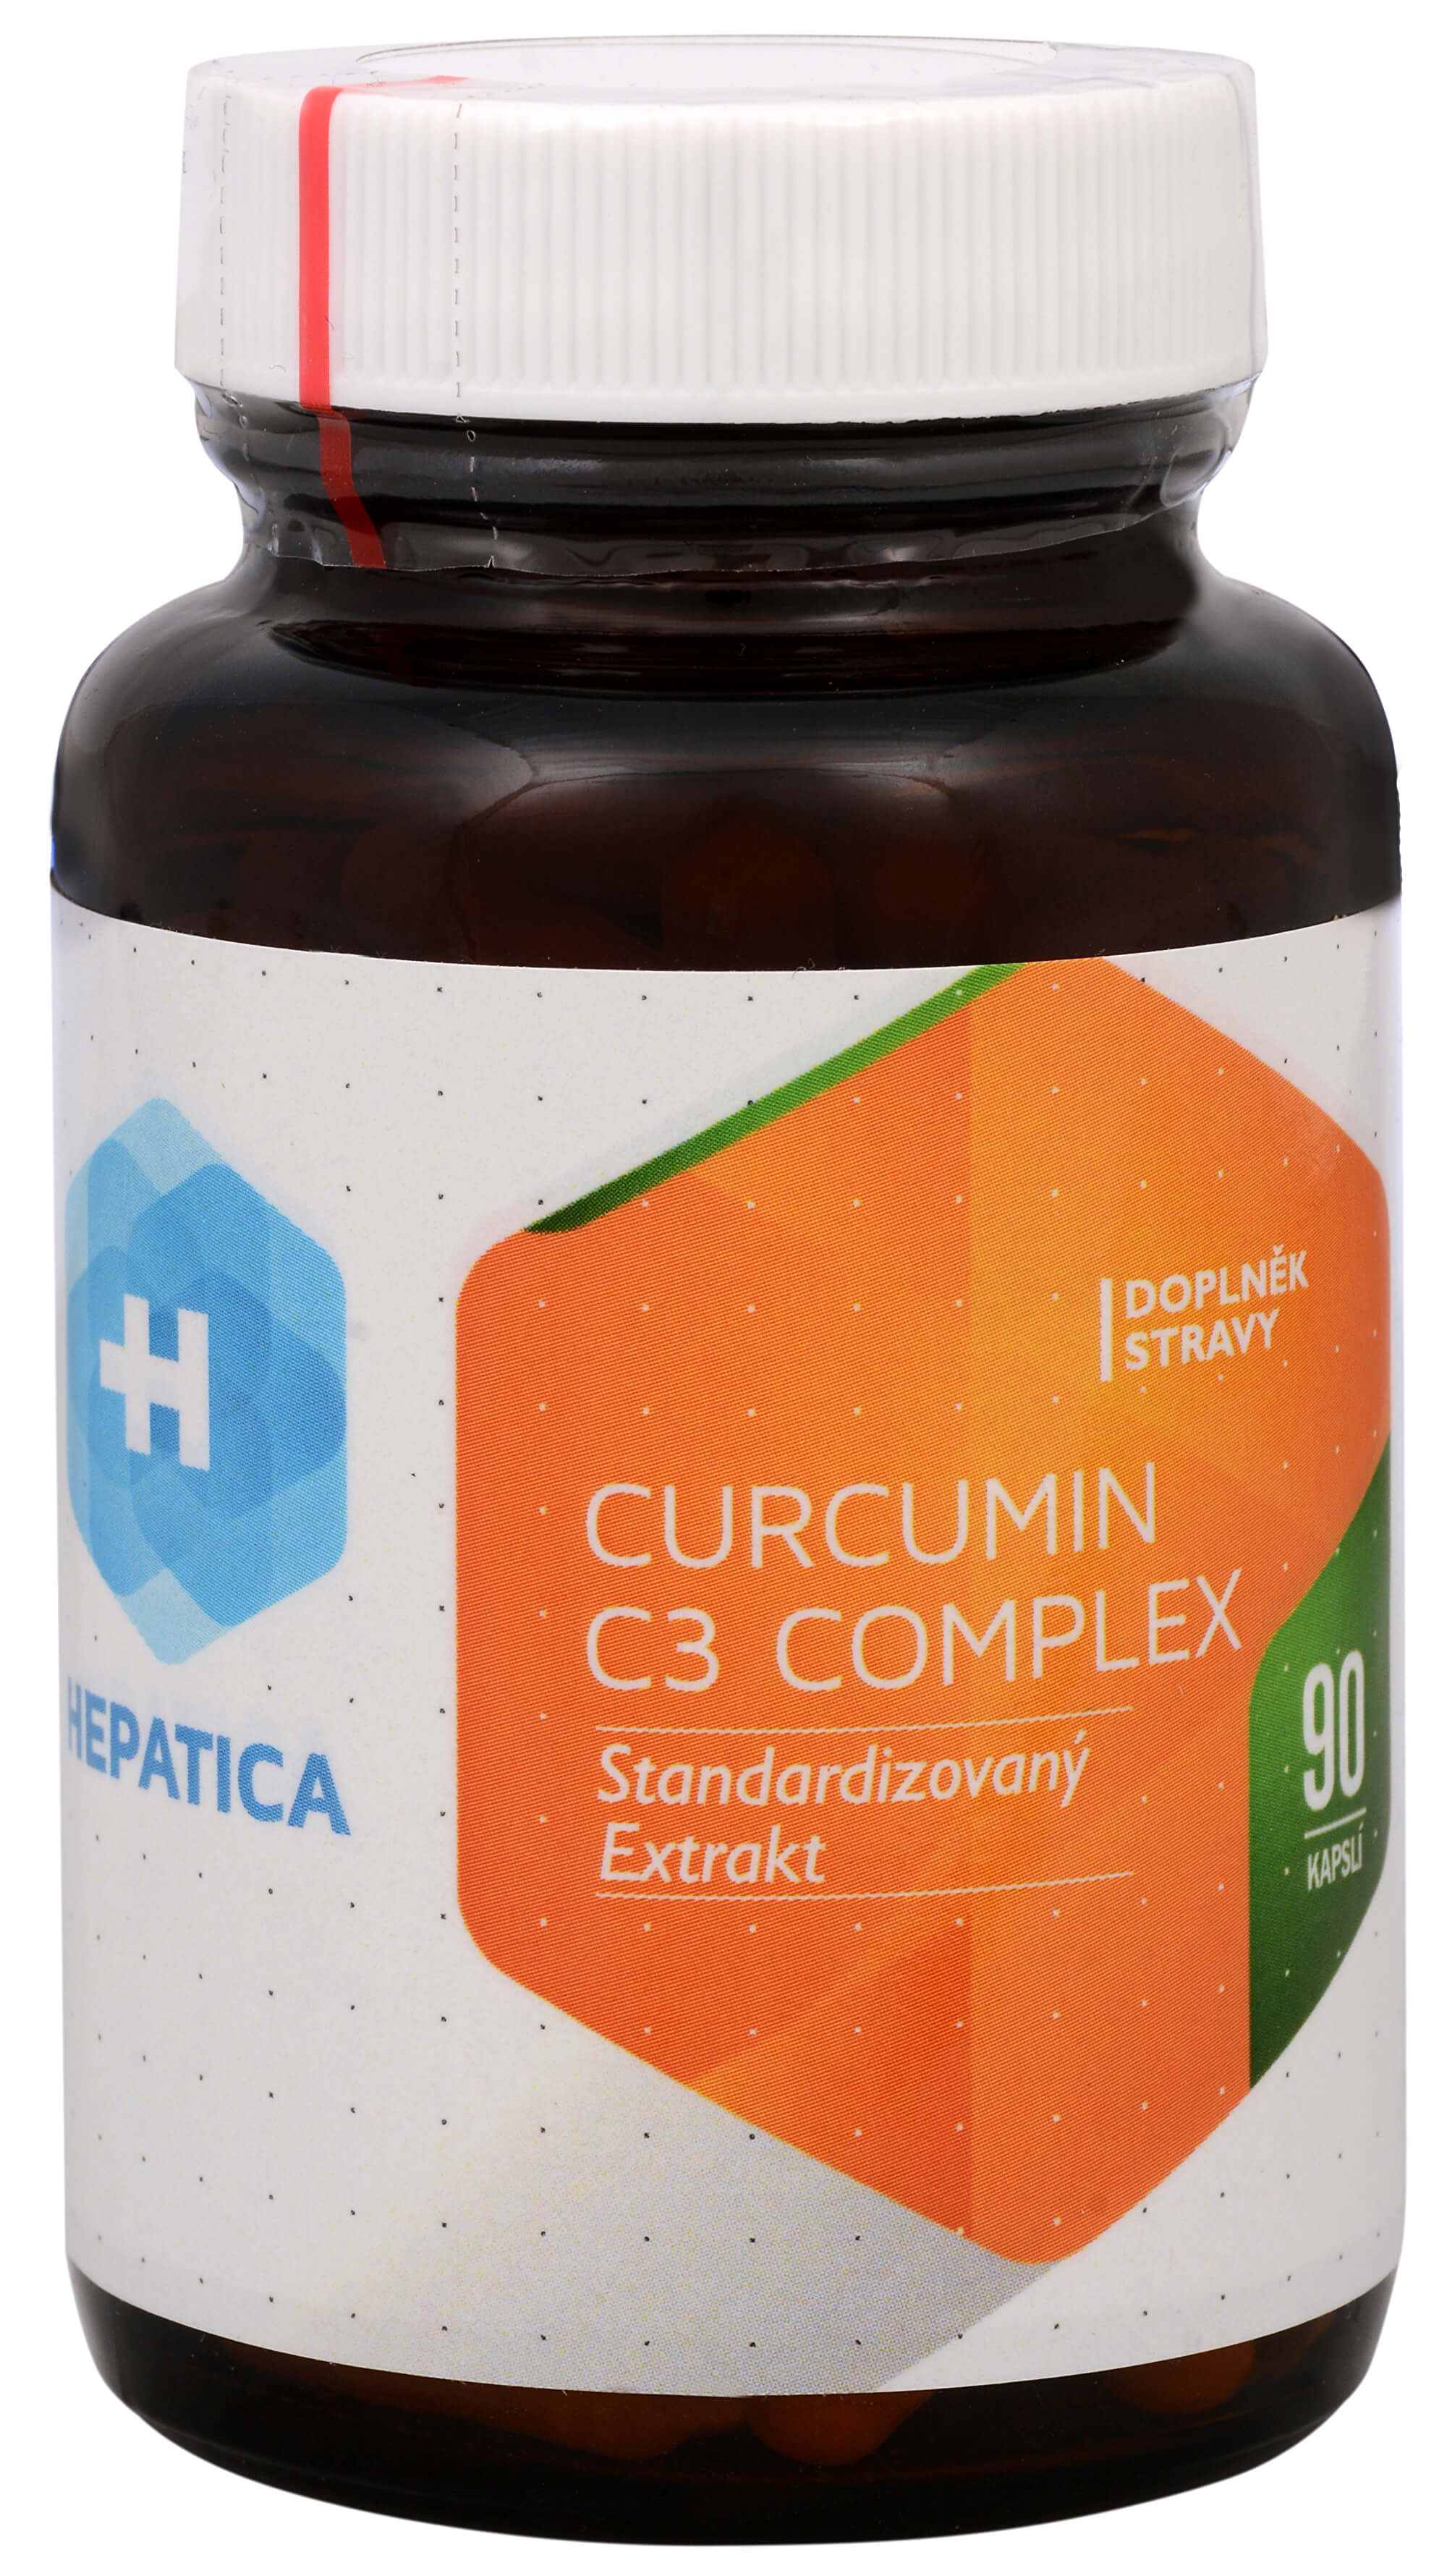 Hepatica Curcumin C3 Complex 90 kapslí